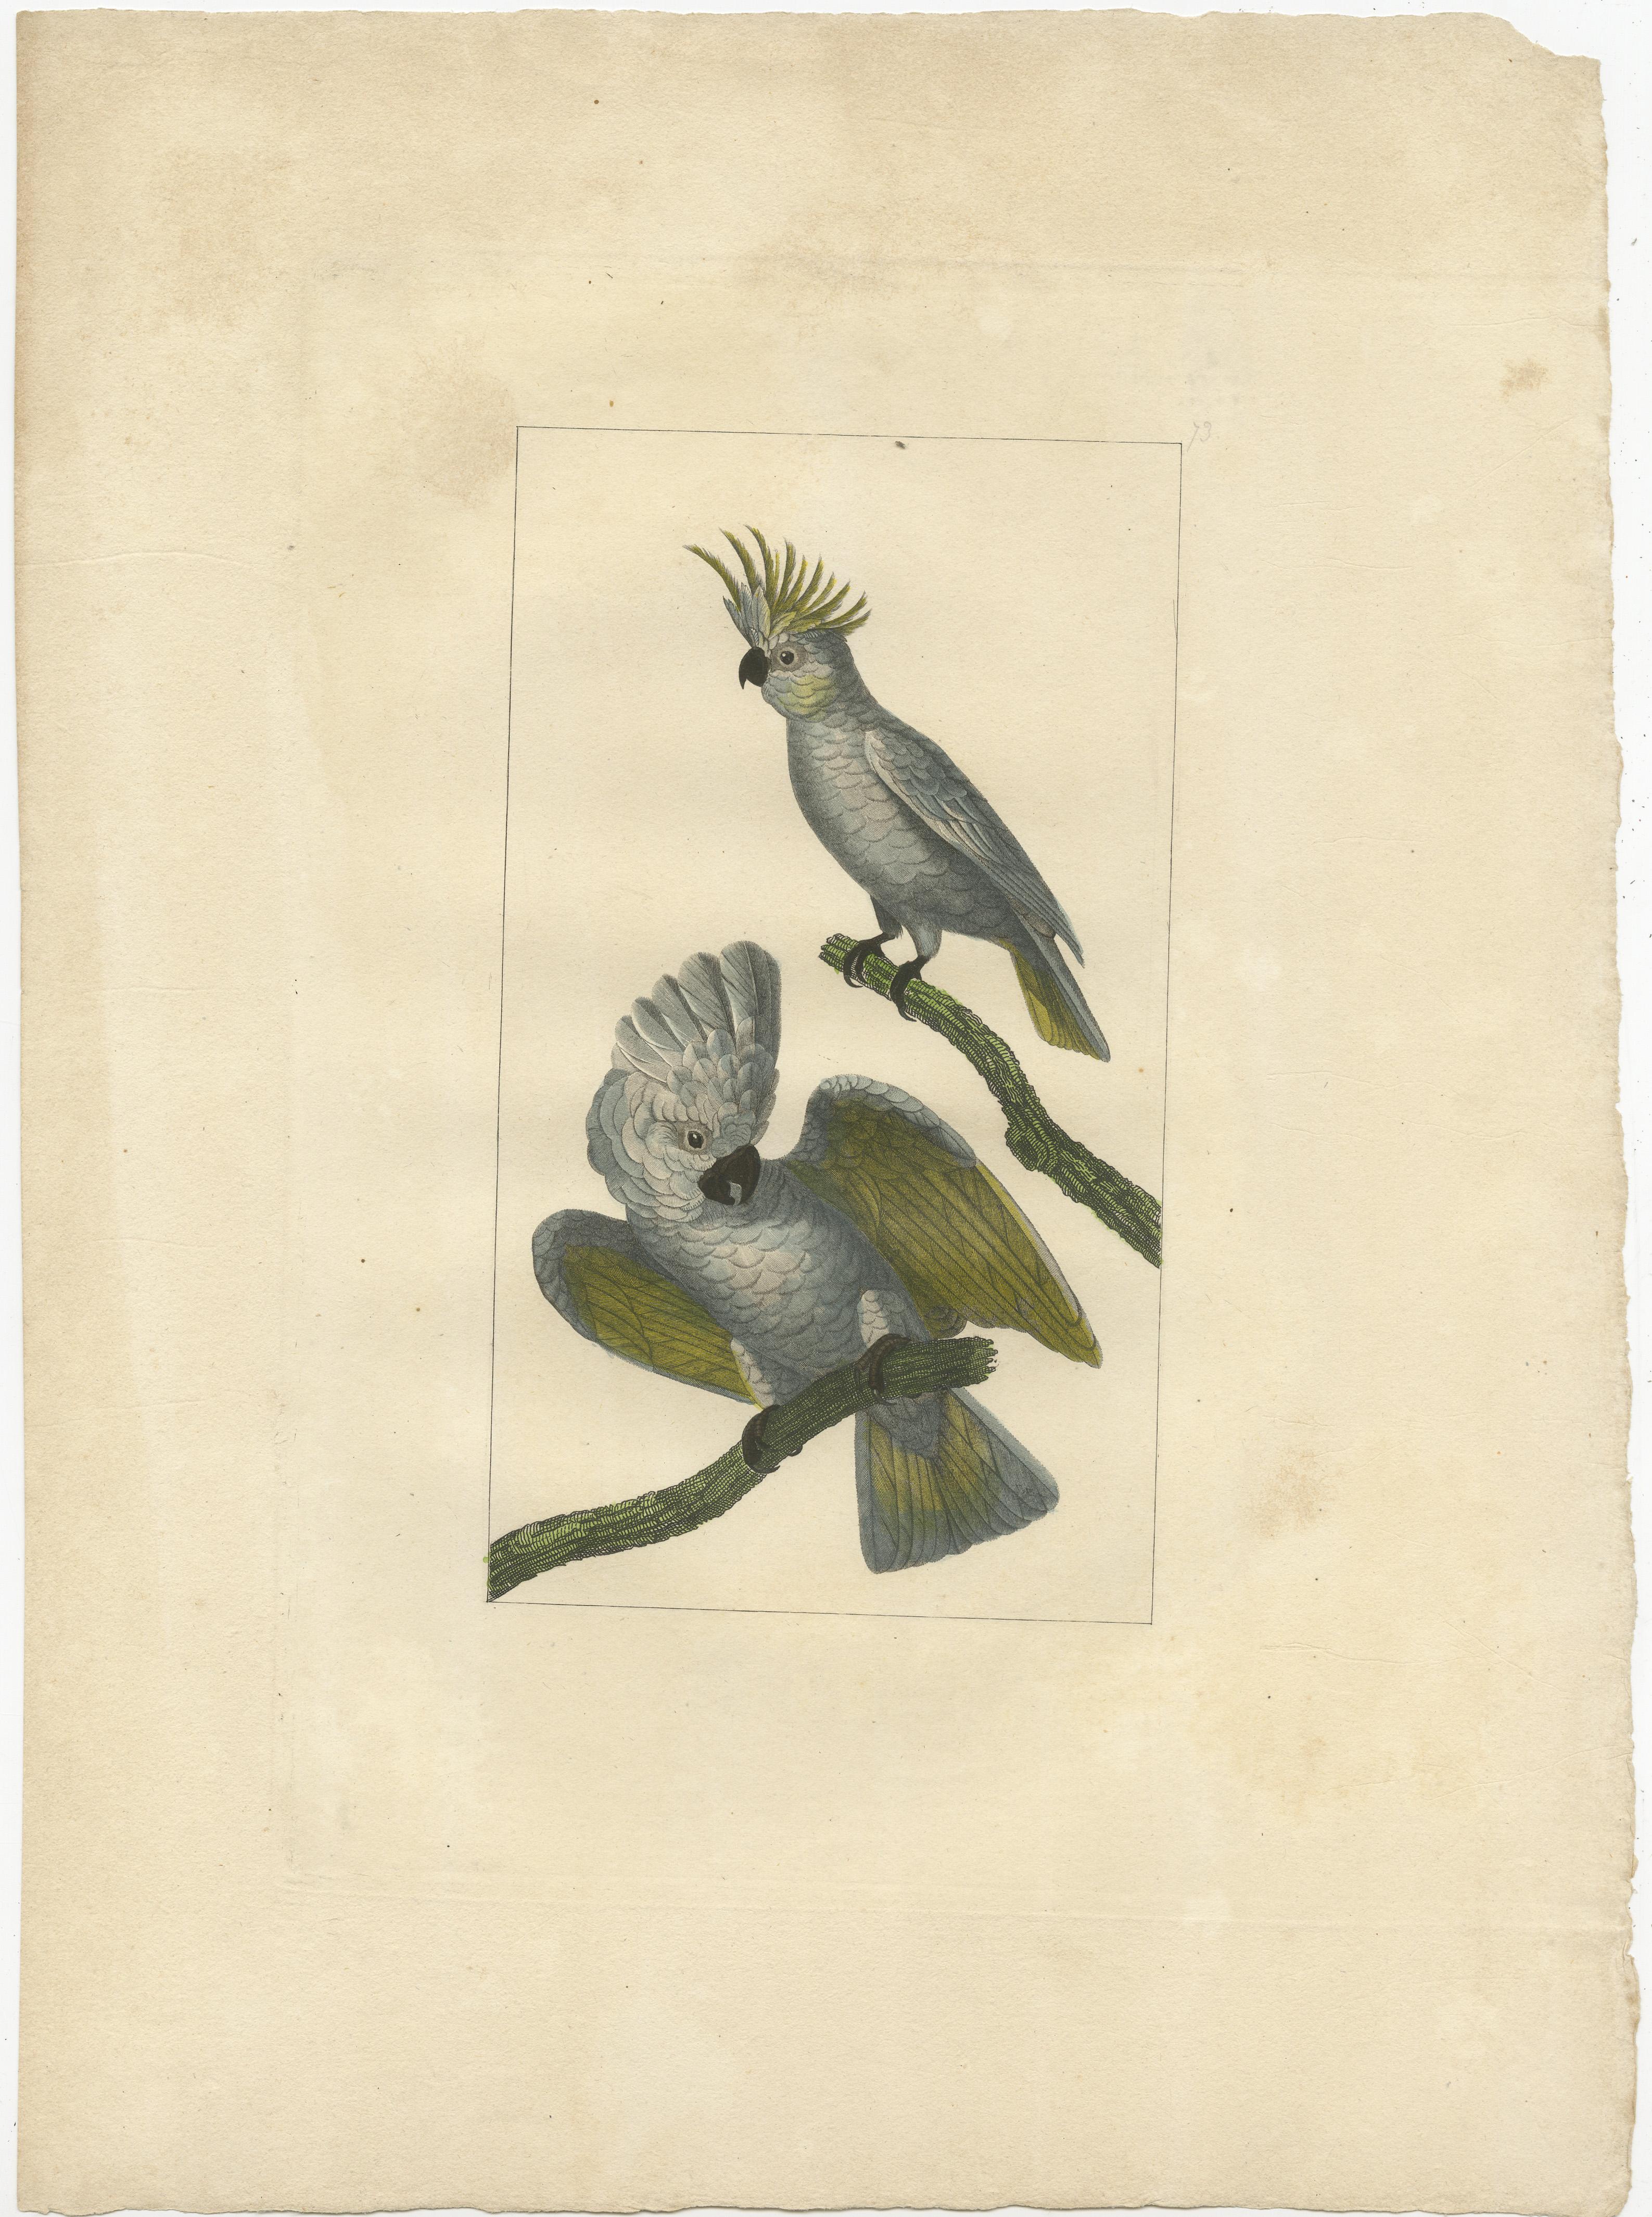 Gravure d'oiseaux sans titre représentant des cacatoès. Source inconnue, à déterminer. Publié vers 1860. 